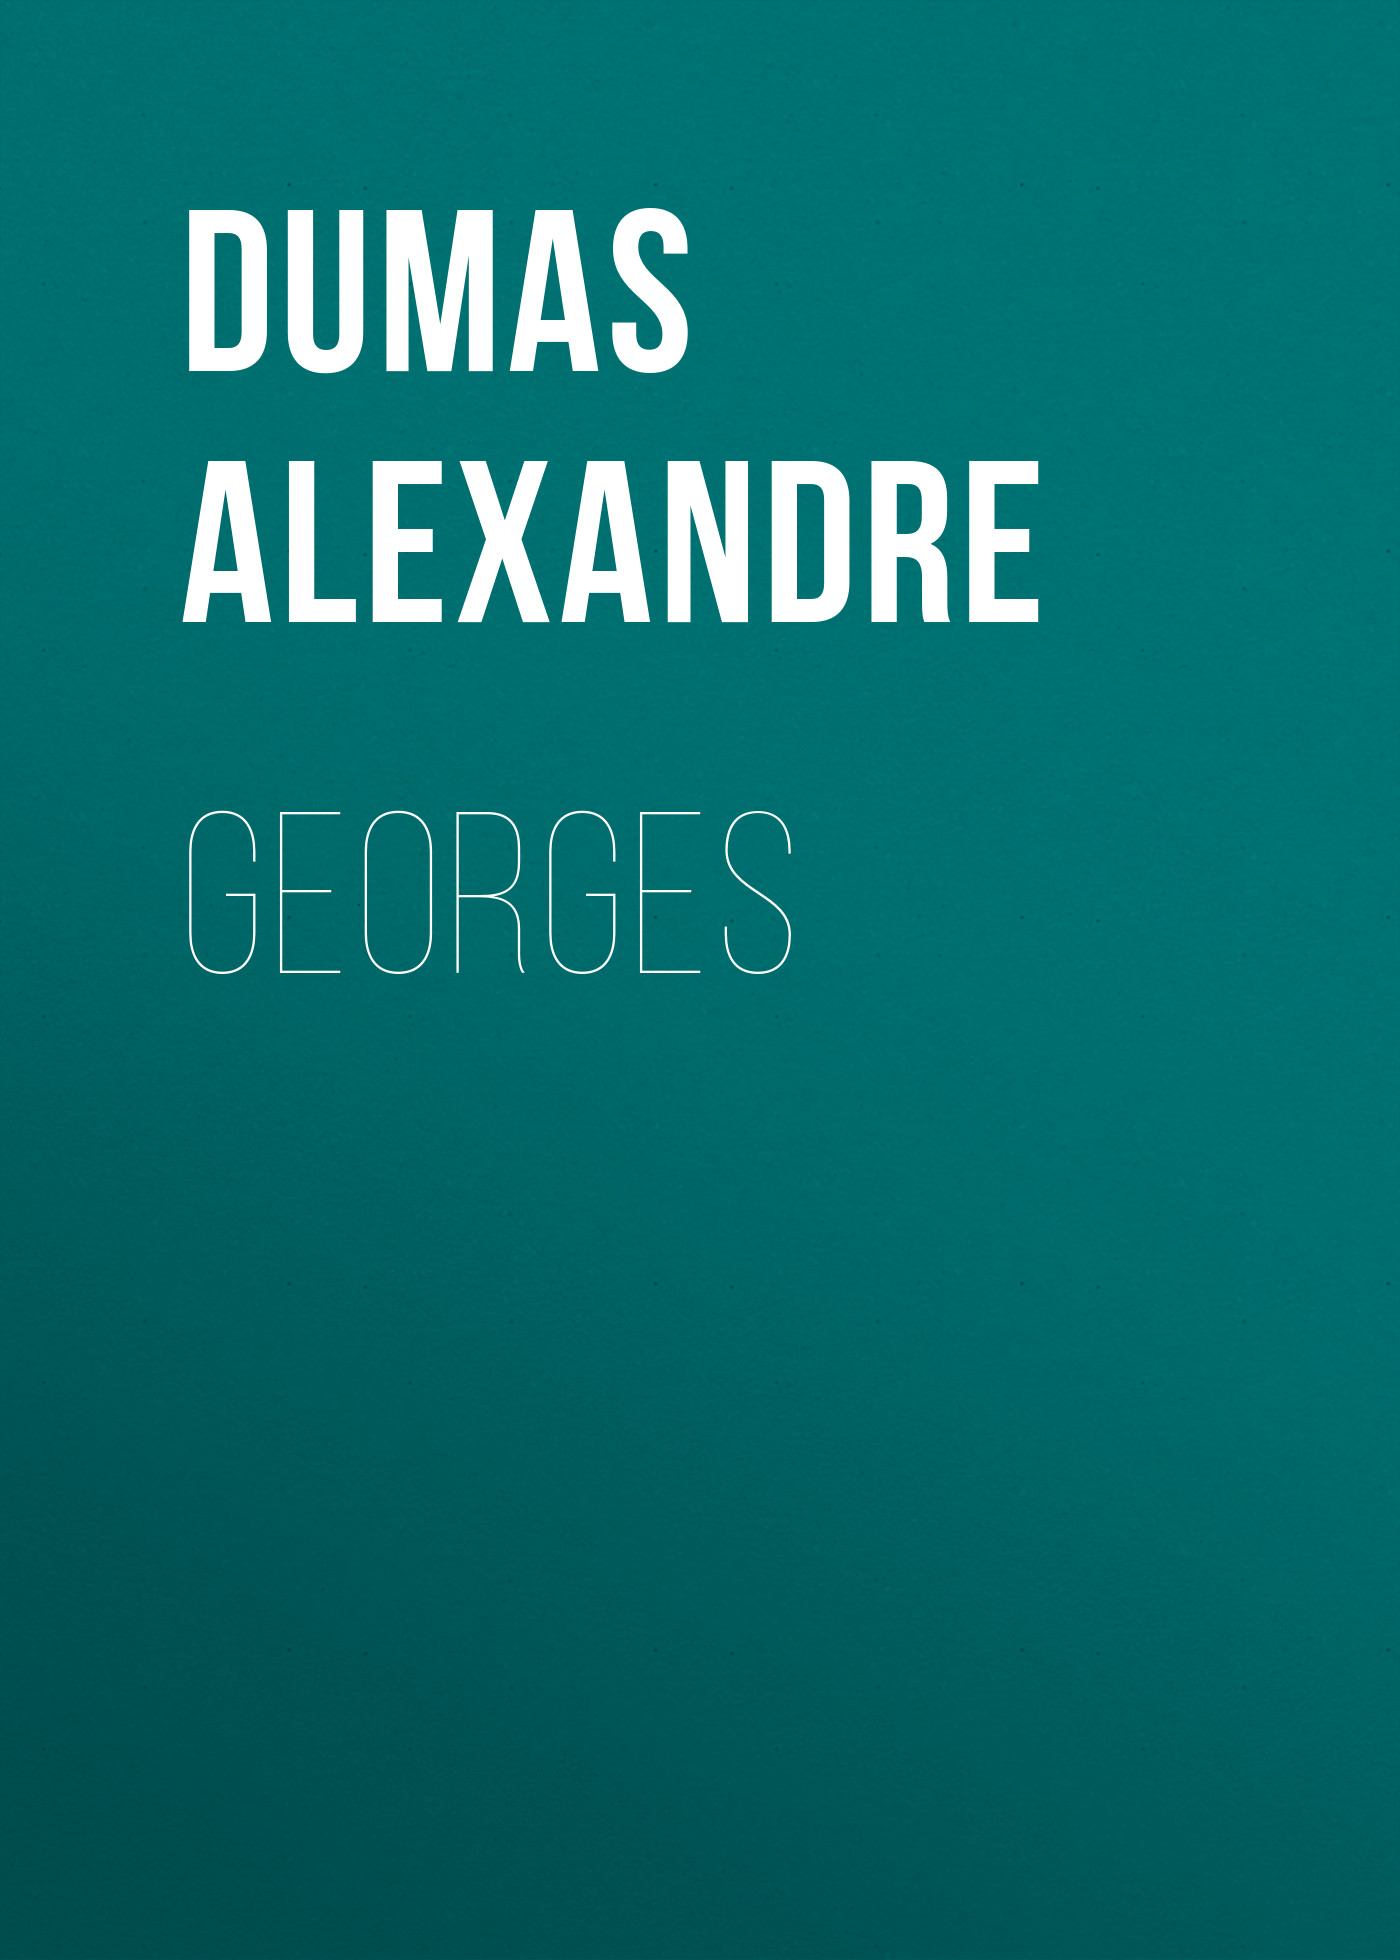 Книга Georges из серии , созданная Alexandre Dumas, может относится к жанру Литература 19 века, Зарубежная старинная литература, Зарубежная классика. Стоимость электронной книги Georges с идентификатором 25203047 составляет 0 руб.